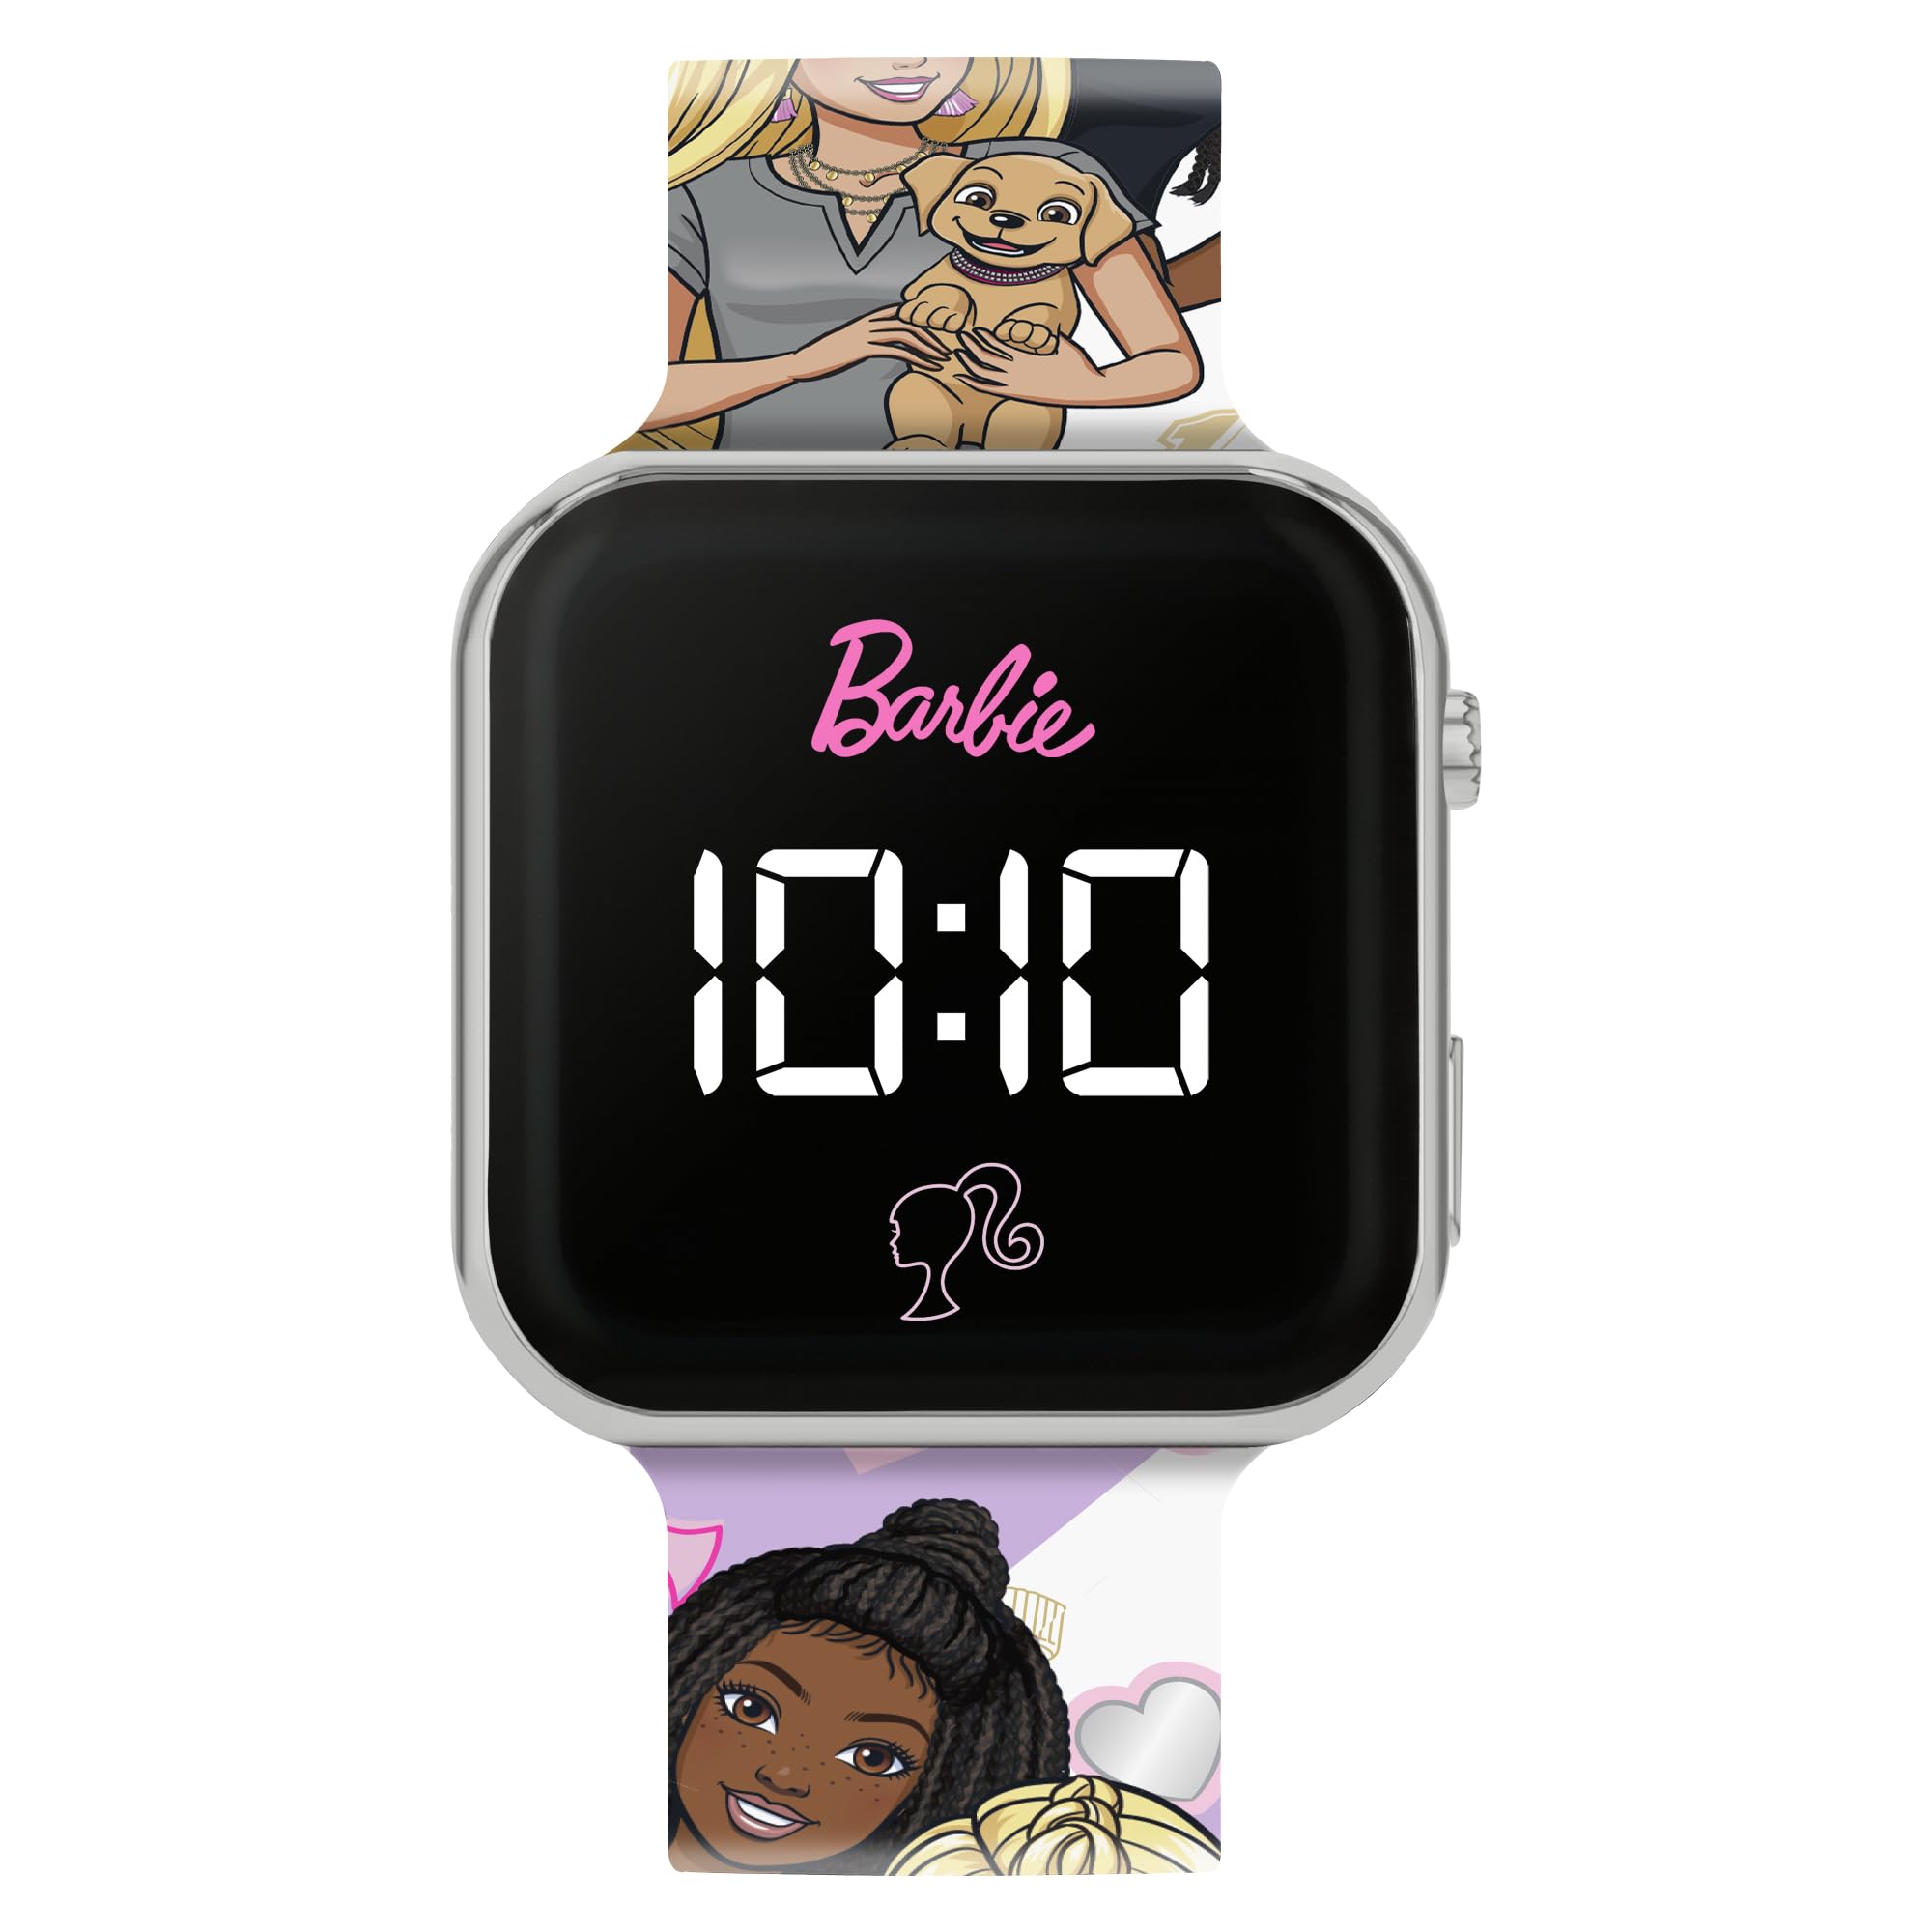 Barbie Printed LED Watch, Pink, Modern